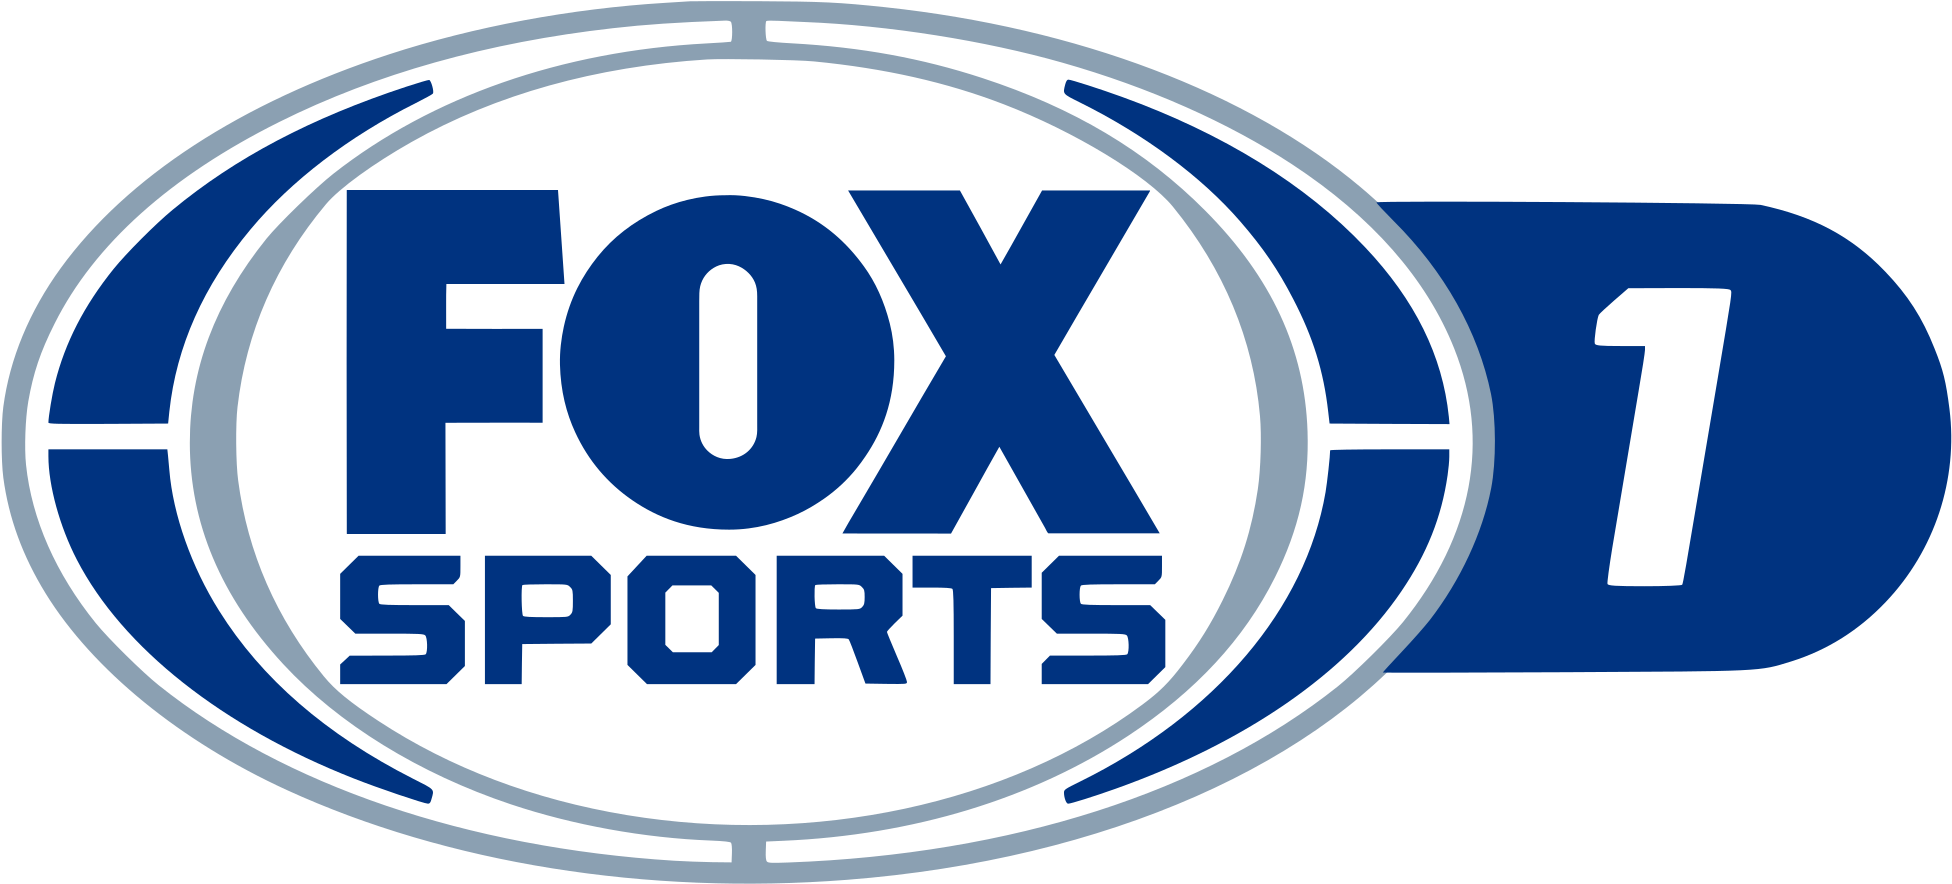 Телеканал Fox. 3 Sport Телеканал. Логотип телеканала Фокс. Sport3.TV.